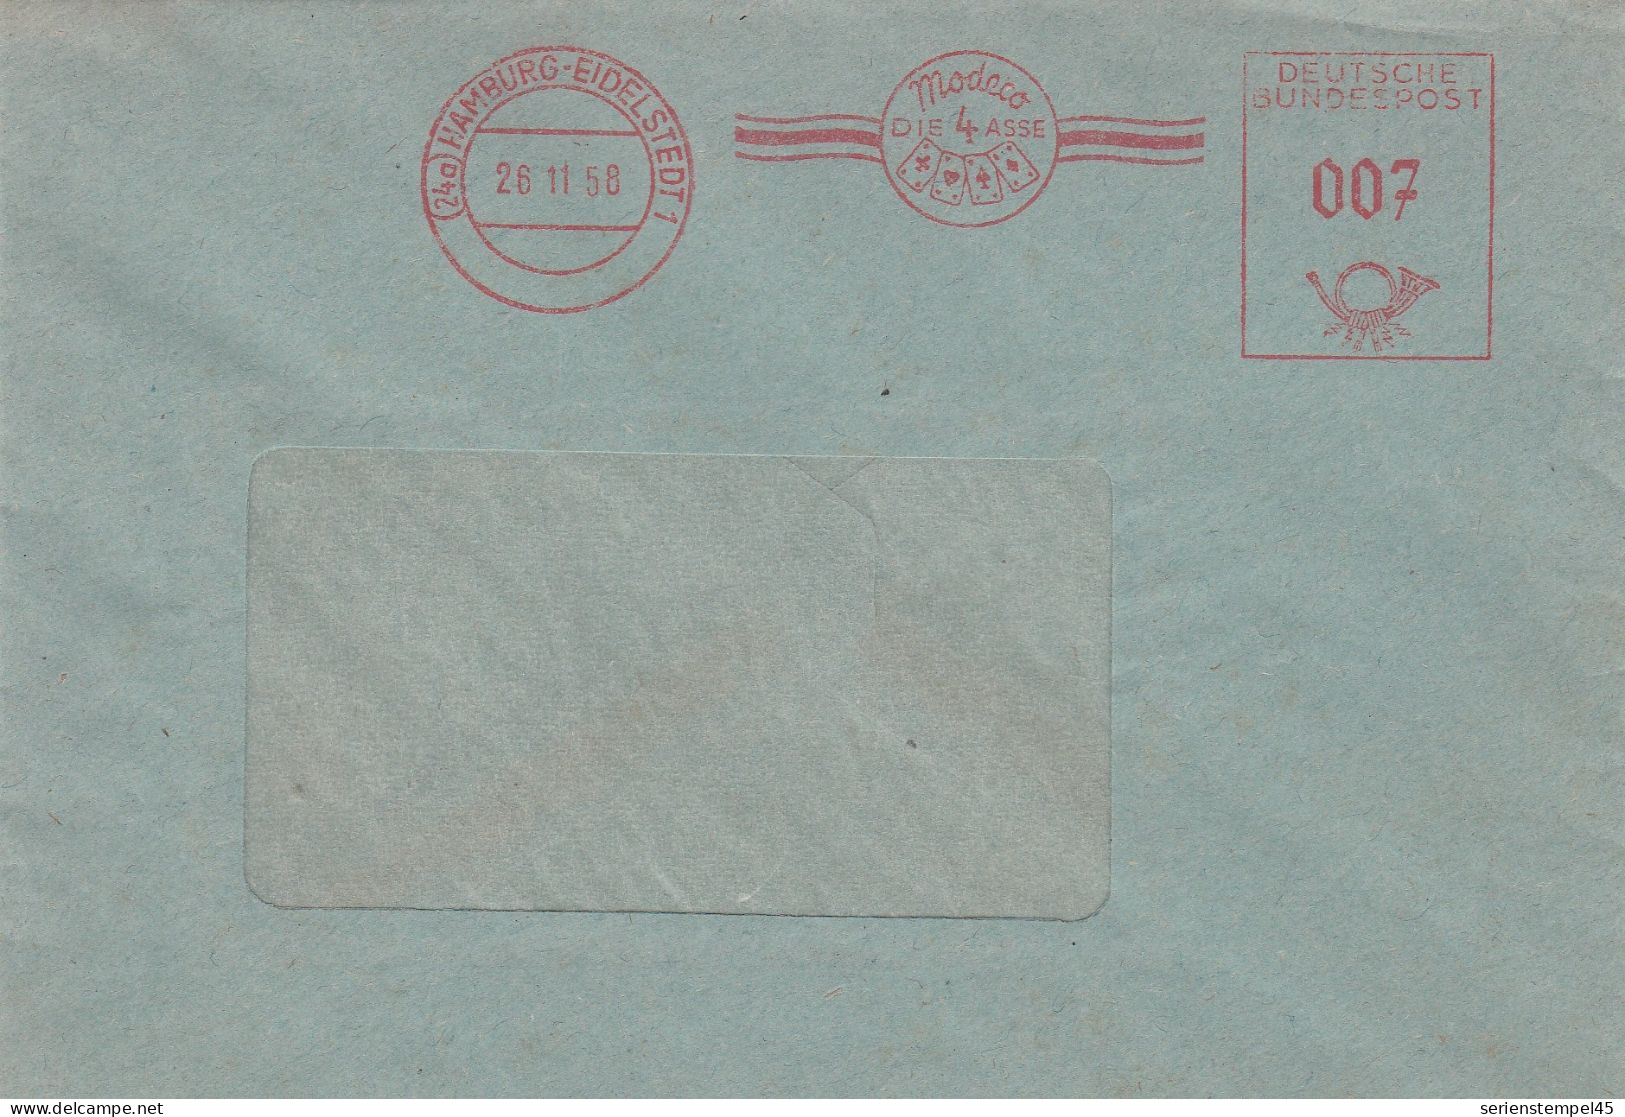 Bund Brief Mit Freistempel Rot Mit Motiv Kartenspiel Hamburg Eidelstedt 1958 Modeco Die 4 Asse - Ohne Zuordnung